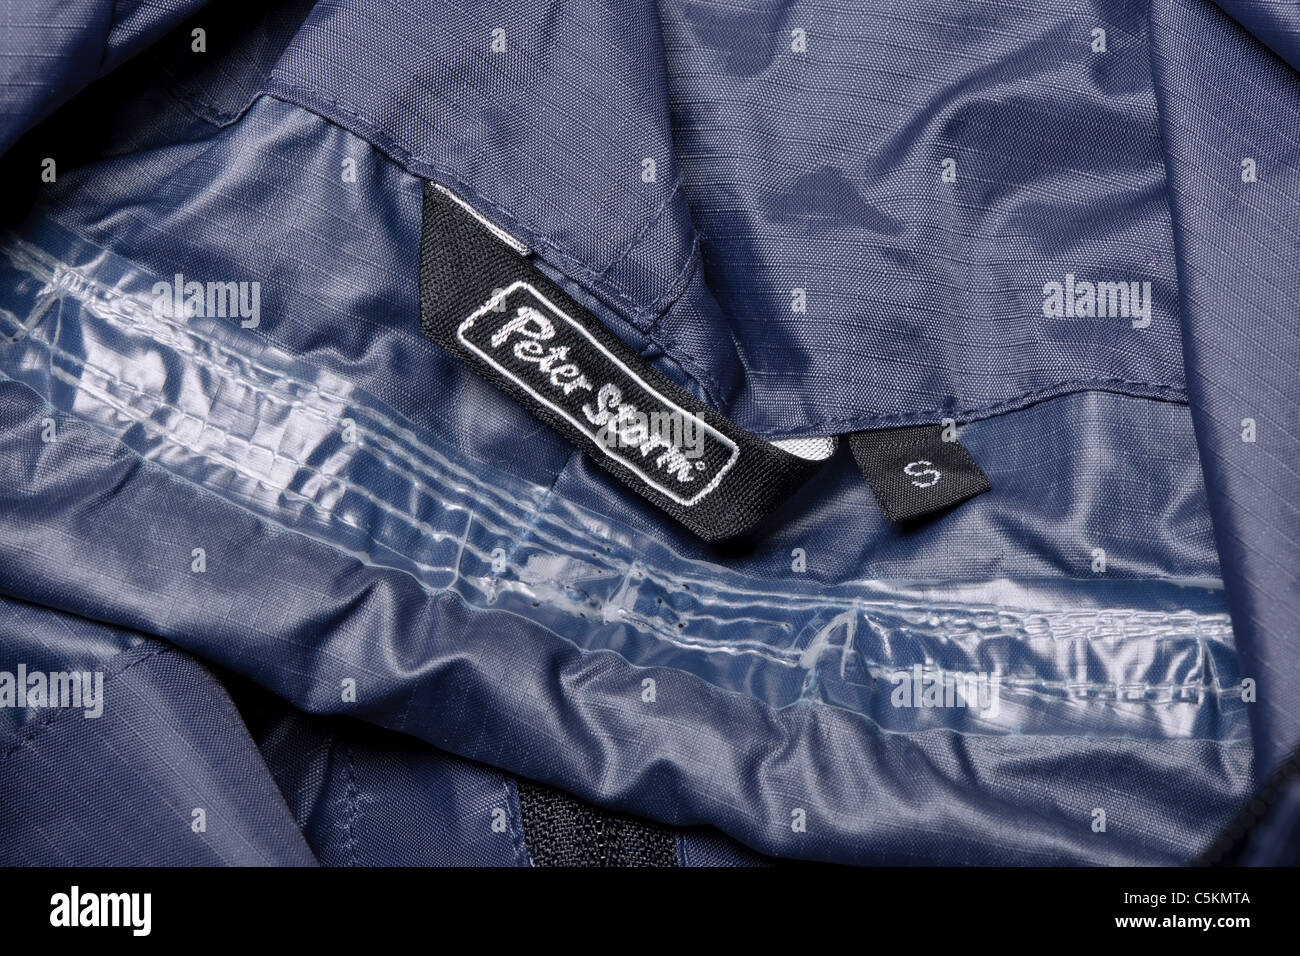 Peter Storm overhead men's cagoule waterproof jacket in dark blue. Stormtech range. Interior hood label detail. Stock Photo